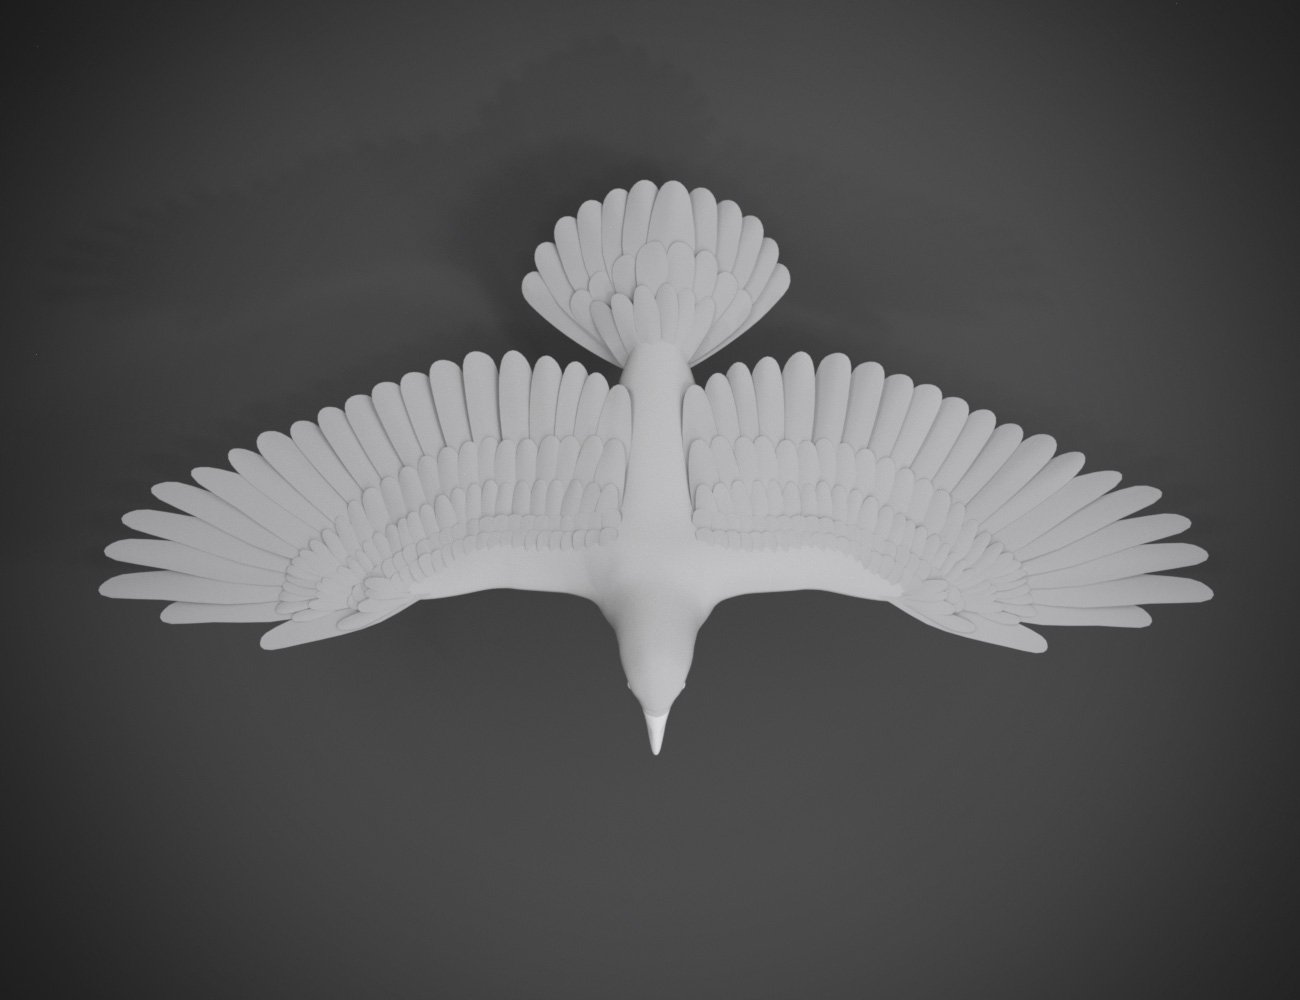 Daz Crow by: Hypertaf, 3D Models by Daz 3D